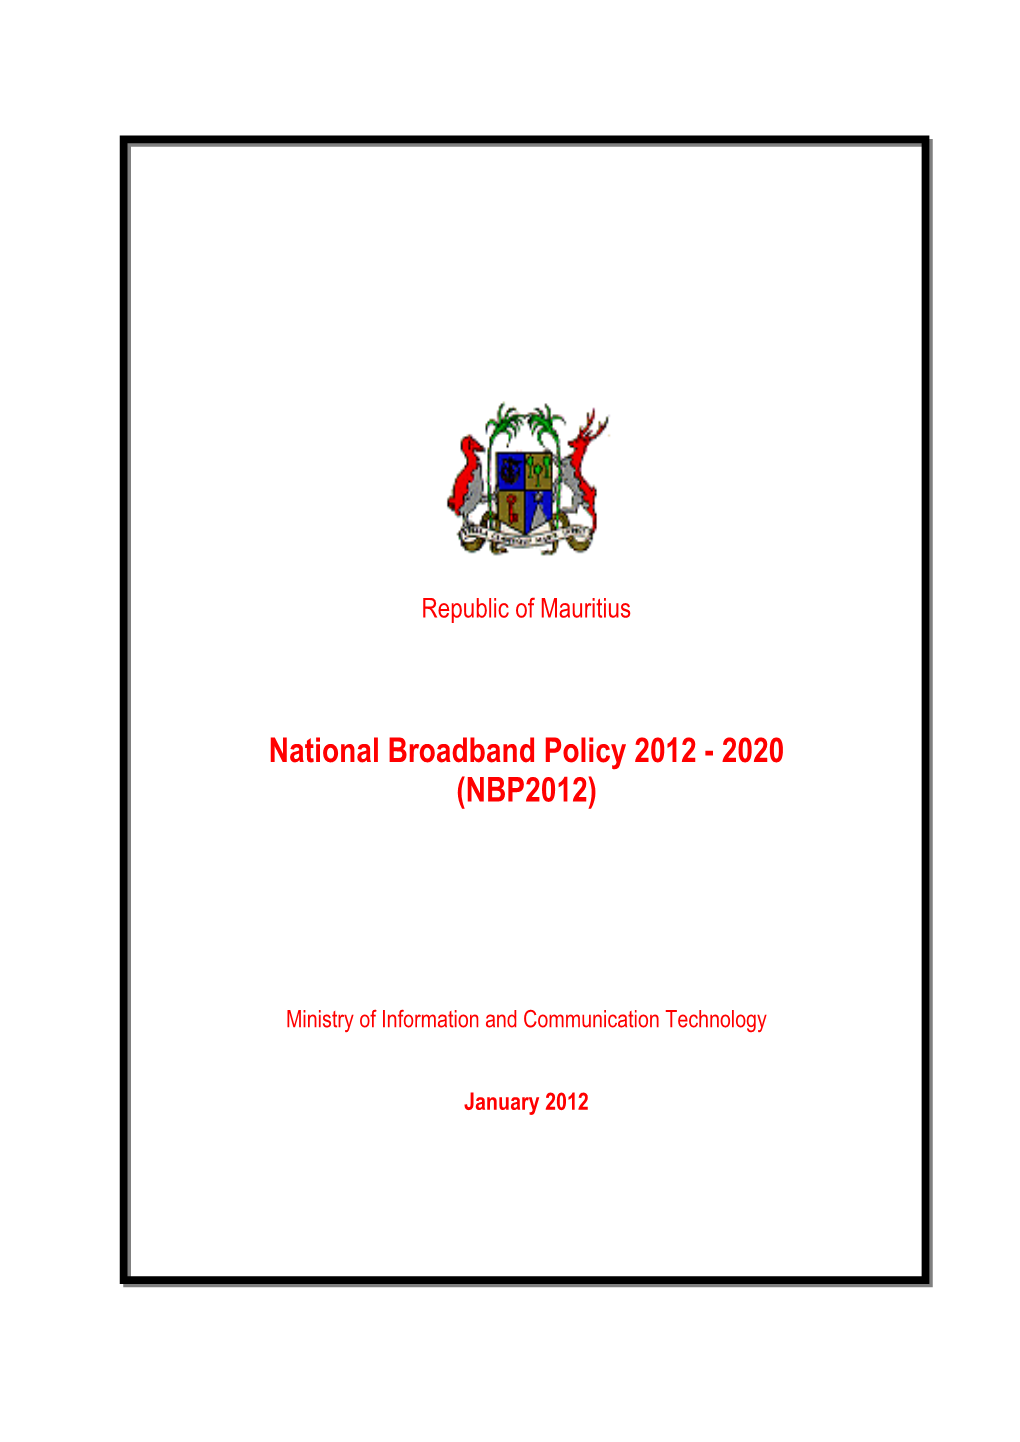 National Broadband Policy 2012 - 2020 (NBP2012)